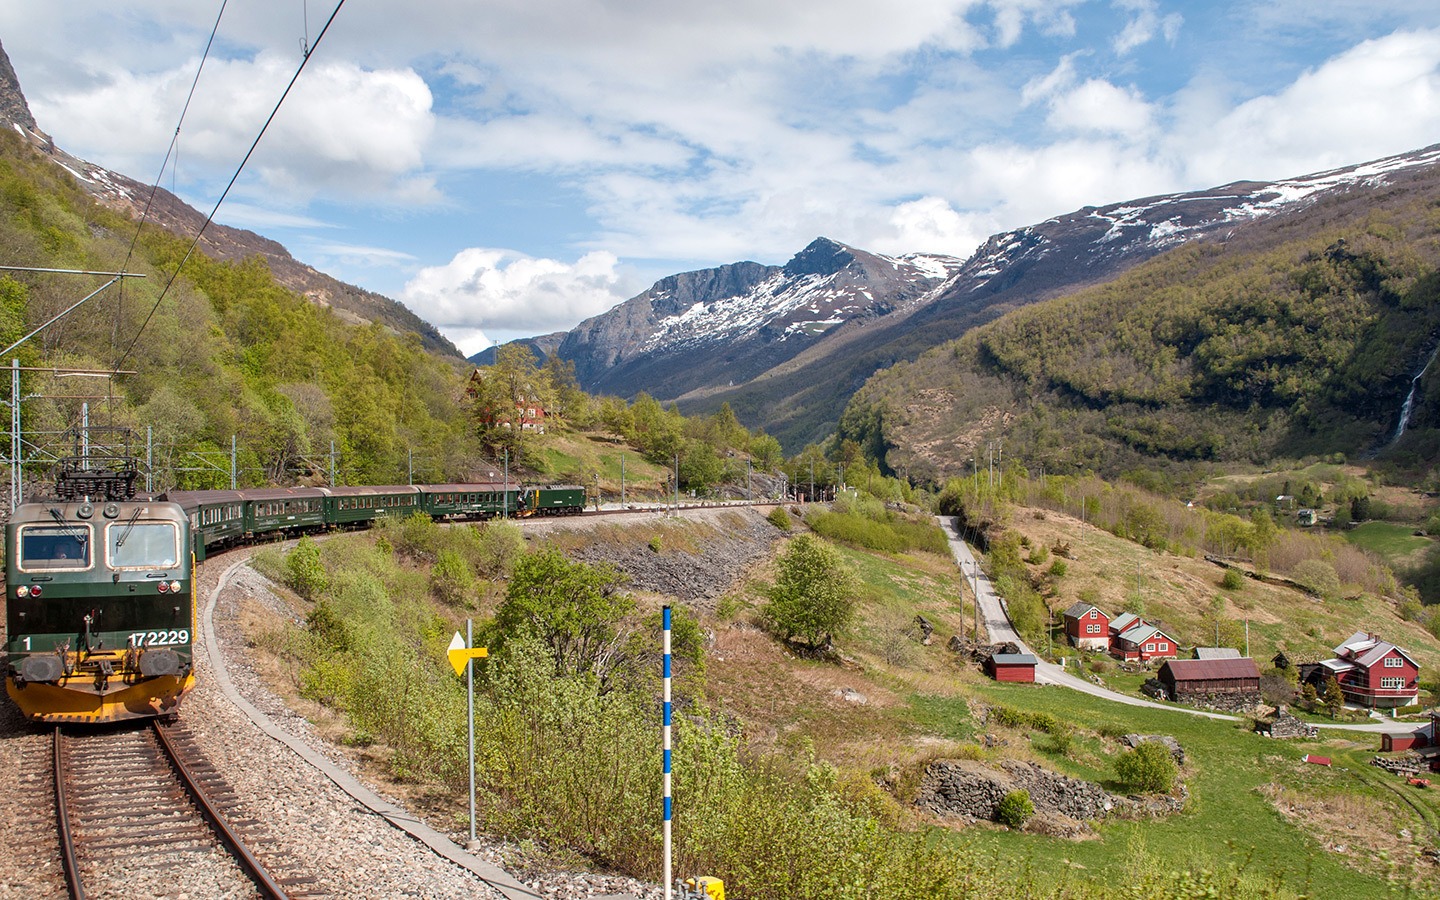 The Flåm Railway in Norway